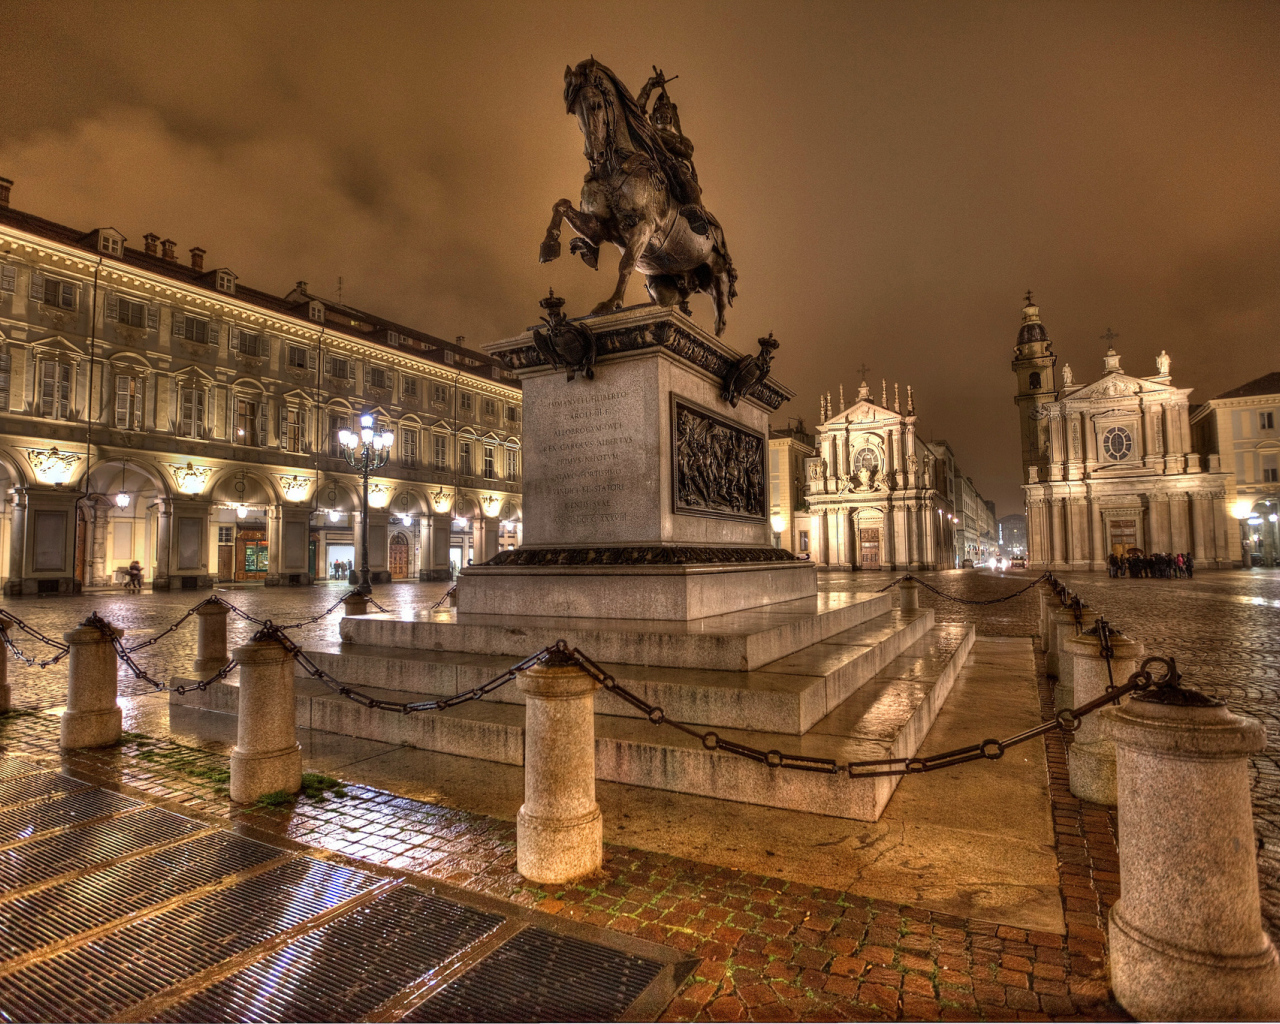 Памятник герцогу Савойскому Эммануилу Филиберту в свете ночных фонарей на площади Сан - Карло, Турин. Италия